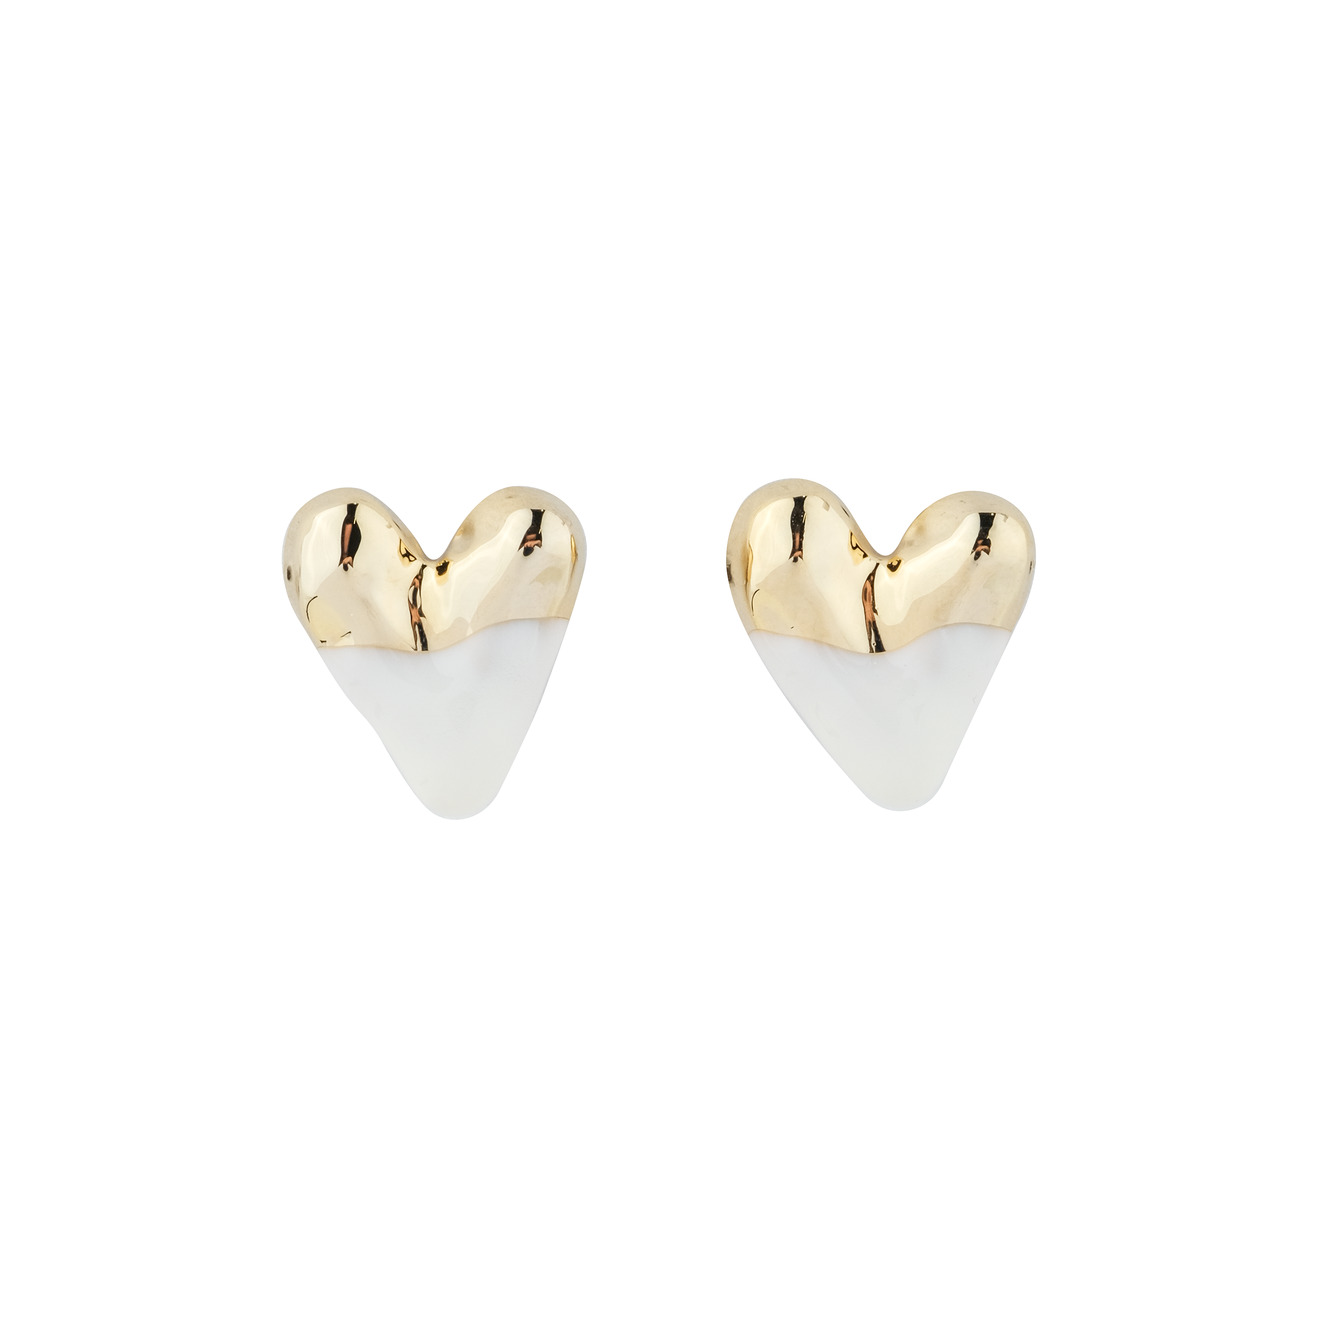 Aqua Золотистые серьги-сердца с белой эмалью lisa smith золотистые серьги в форме разбитого сердца